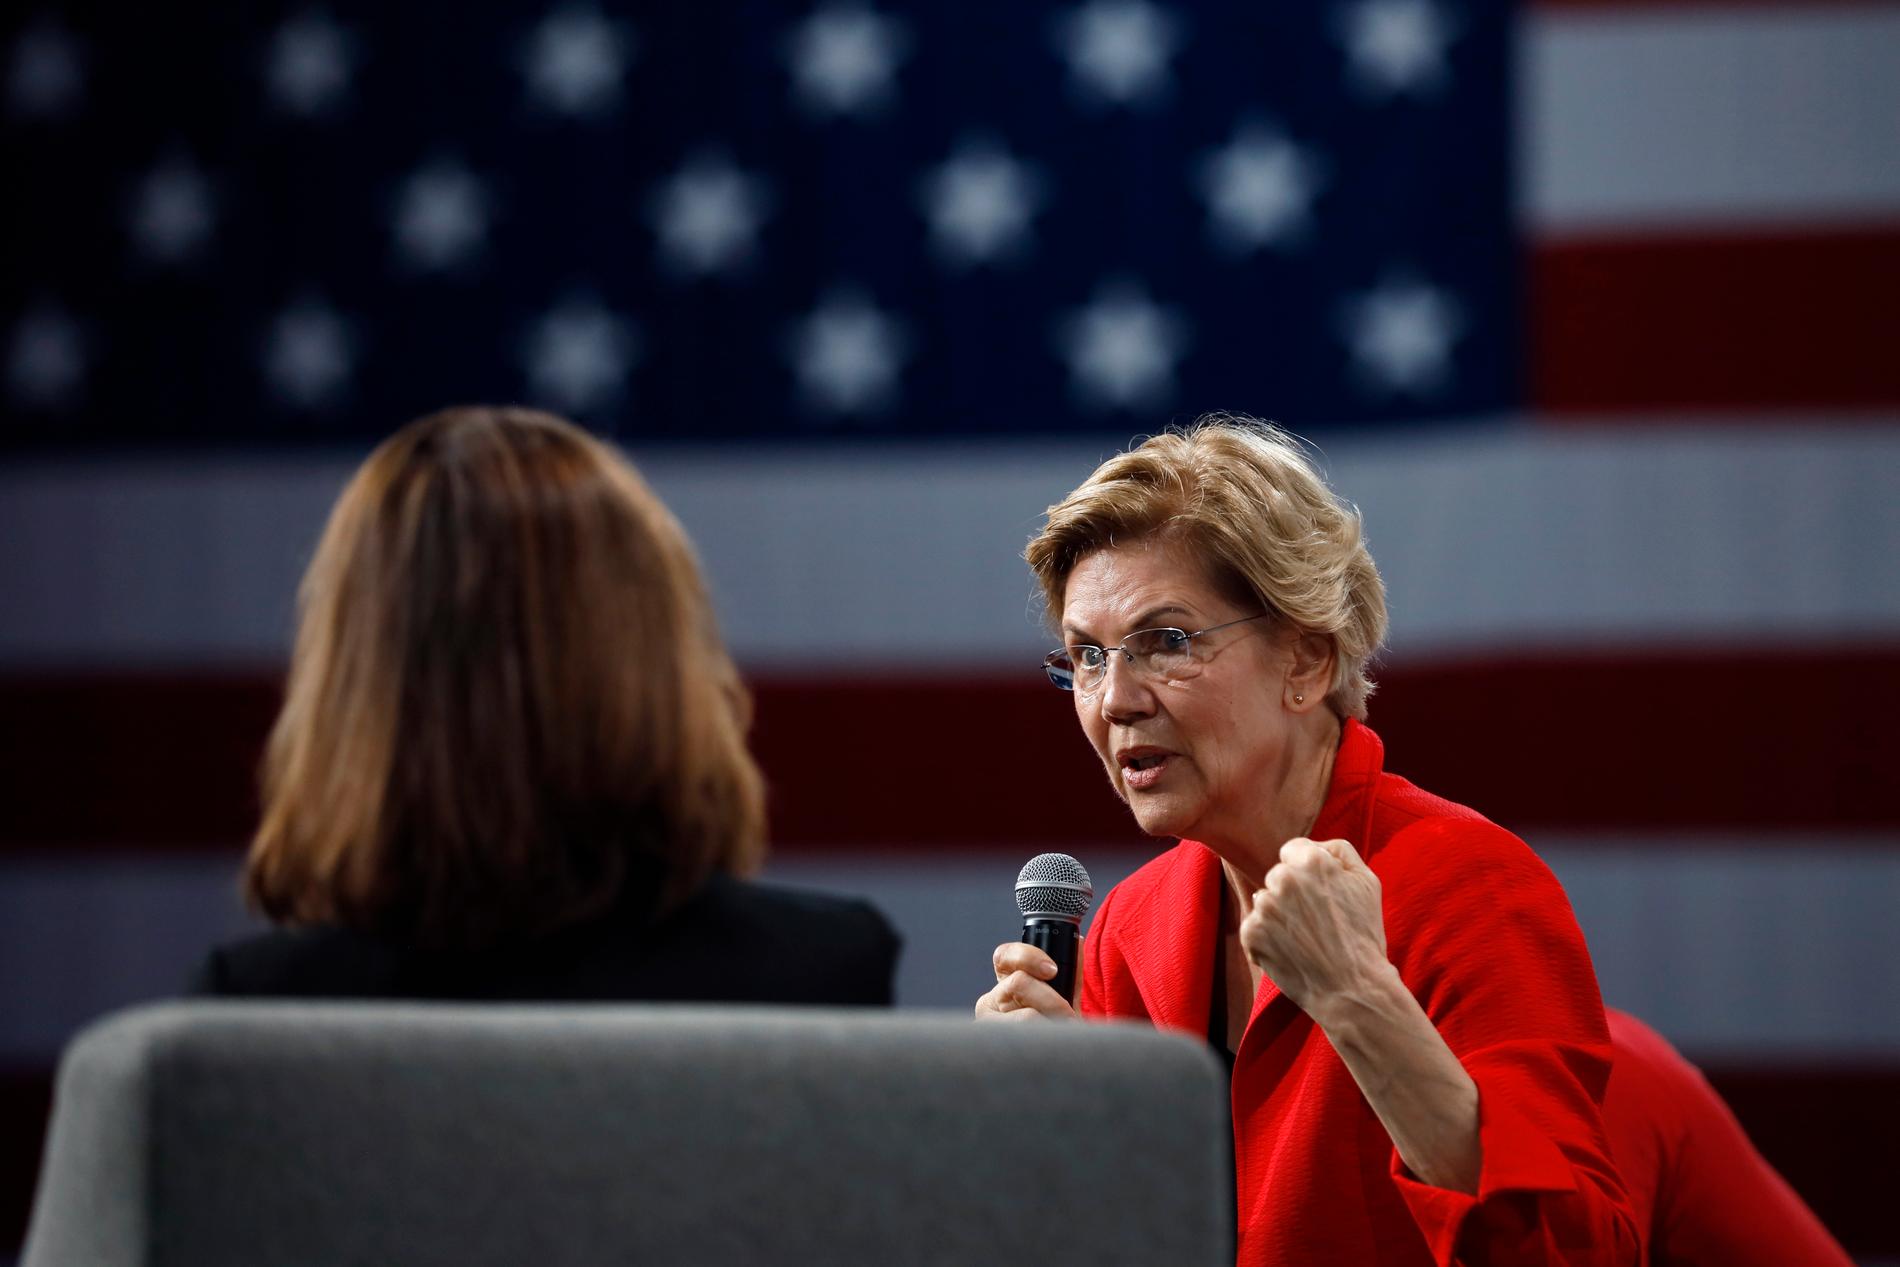 Den nu avhoppade demokratiska presidentaspiranten och Massachusettssenatorn Elizabeth Warren.